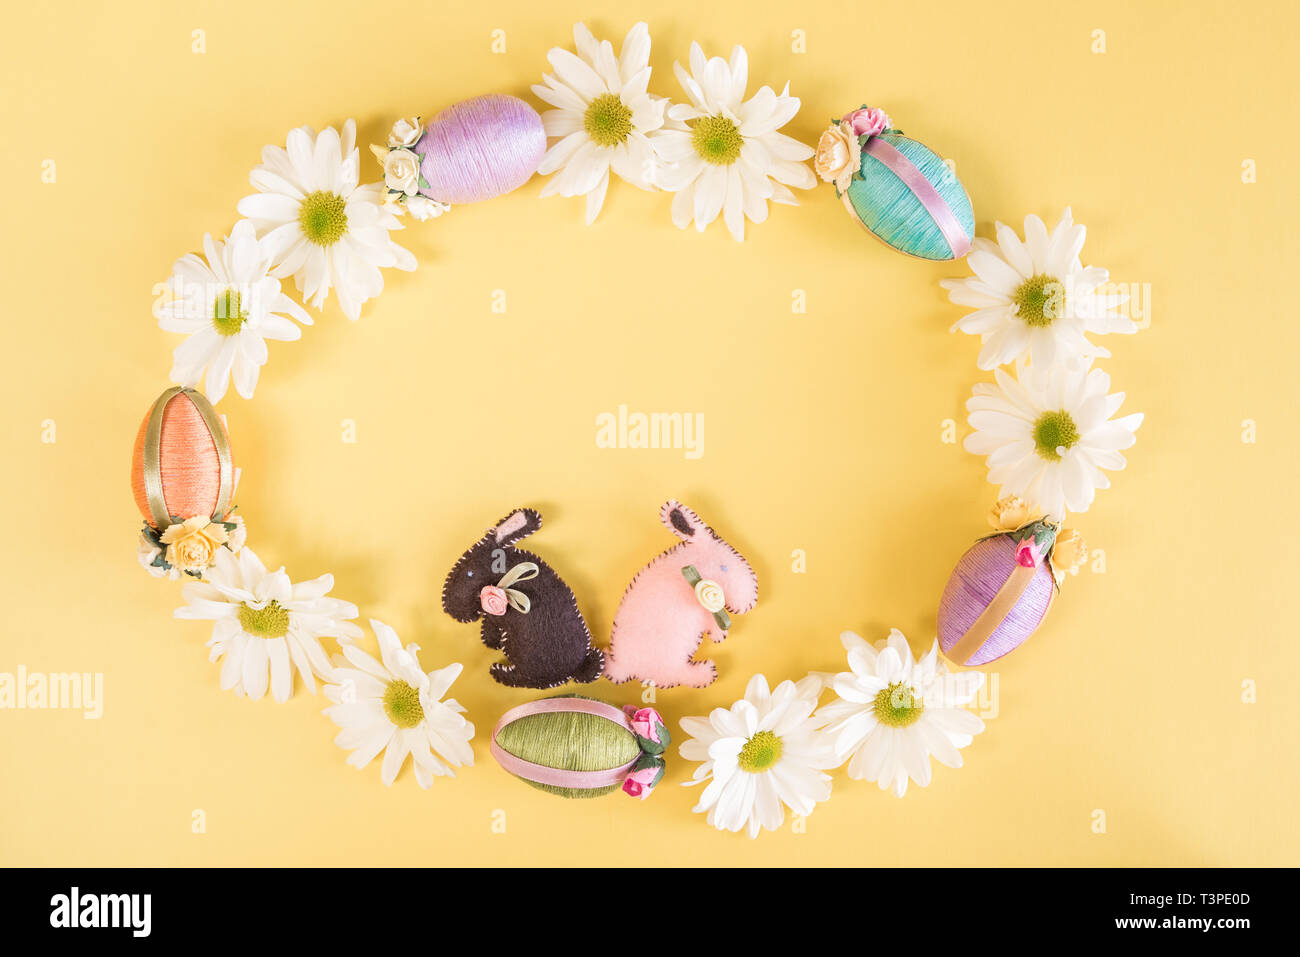 Guirnalda de margaritas, huevos de Pascua, conejitos de Pascua y sobre fondo amarillo pastel sólido Foto de stock